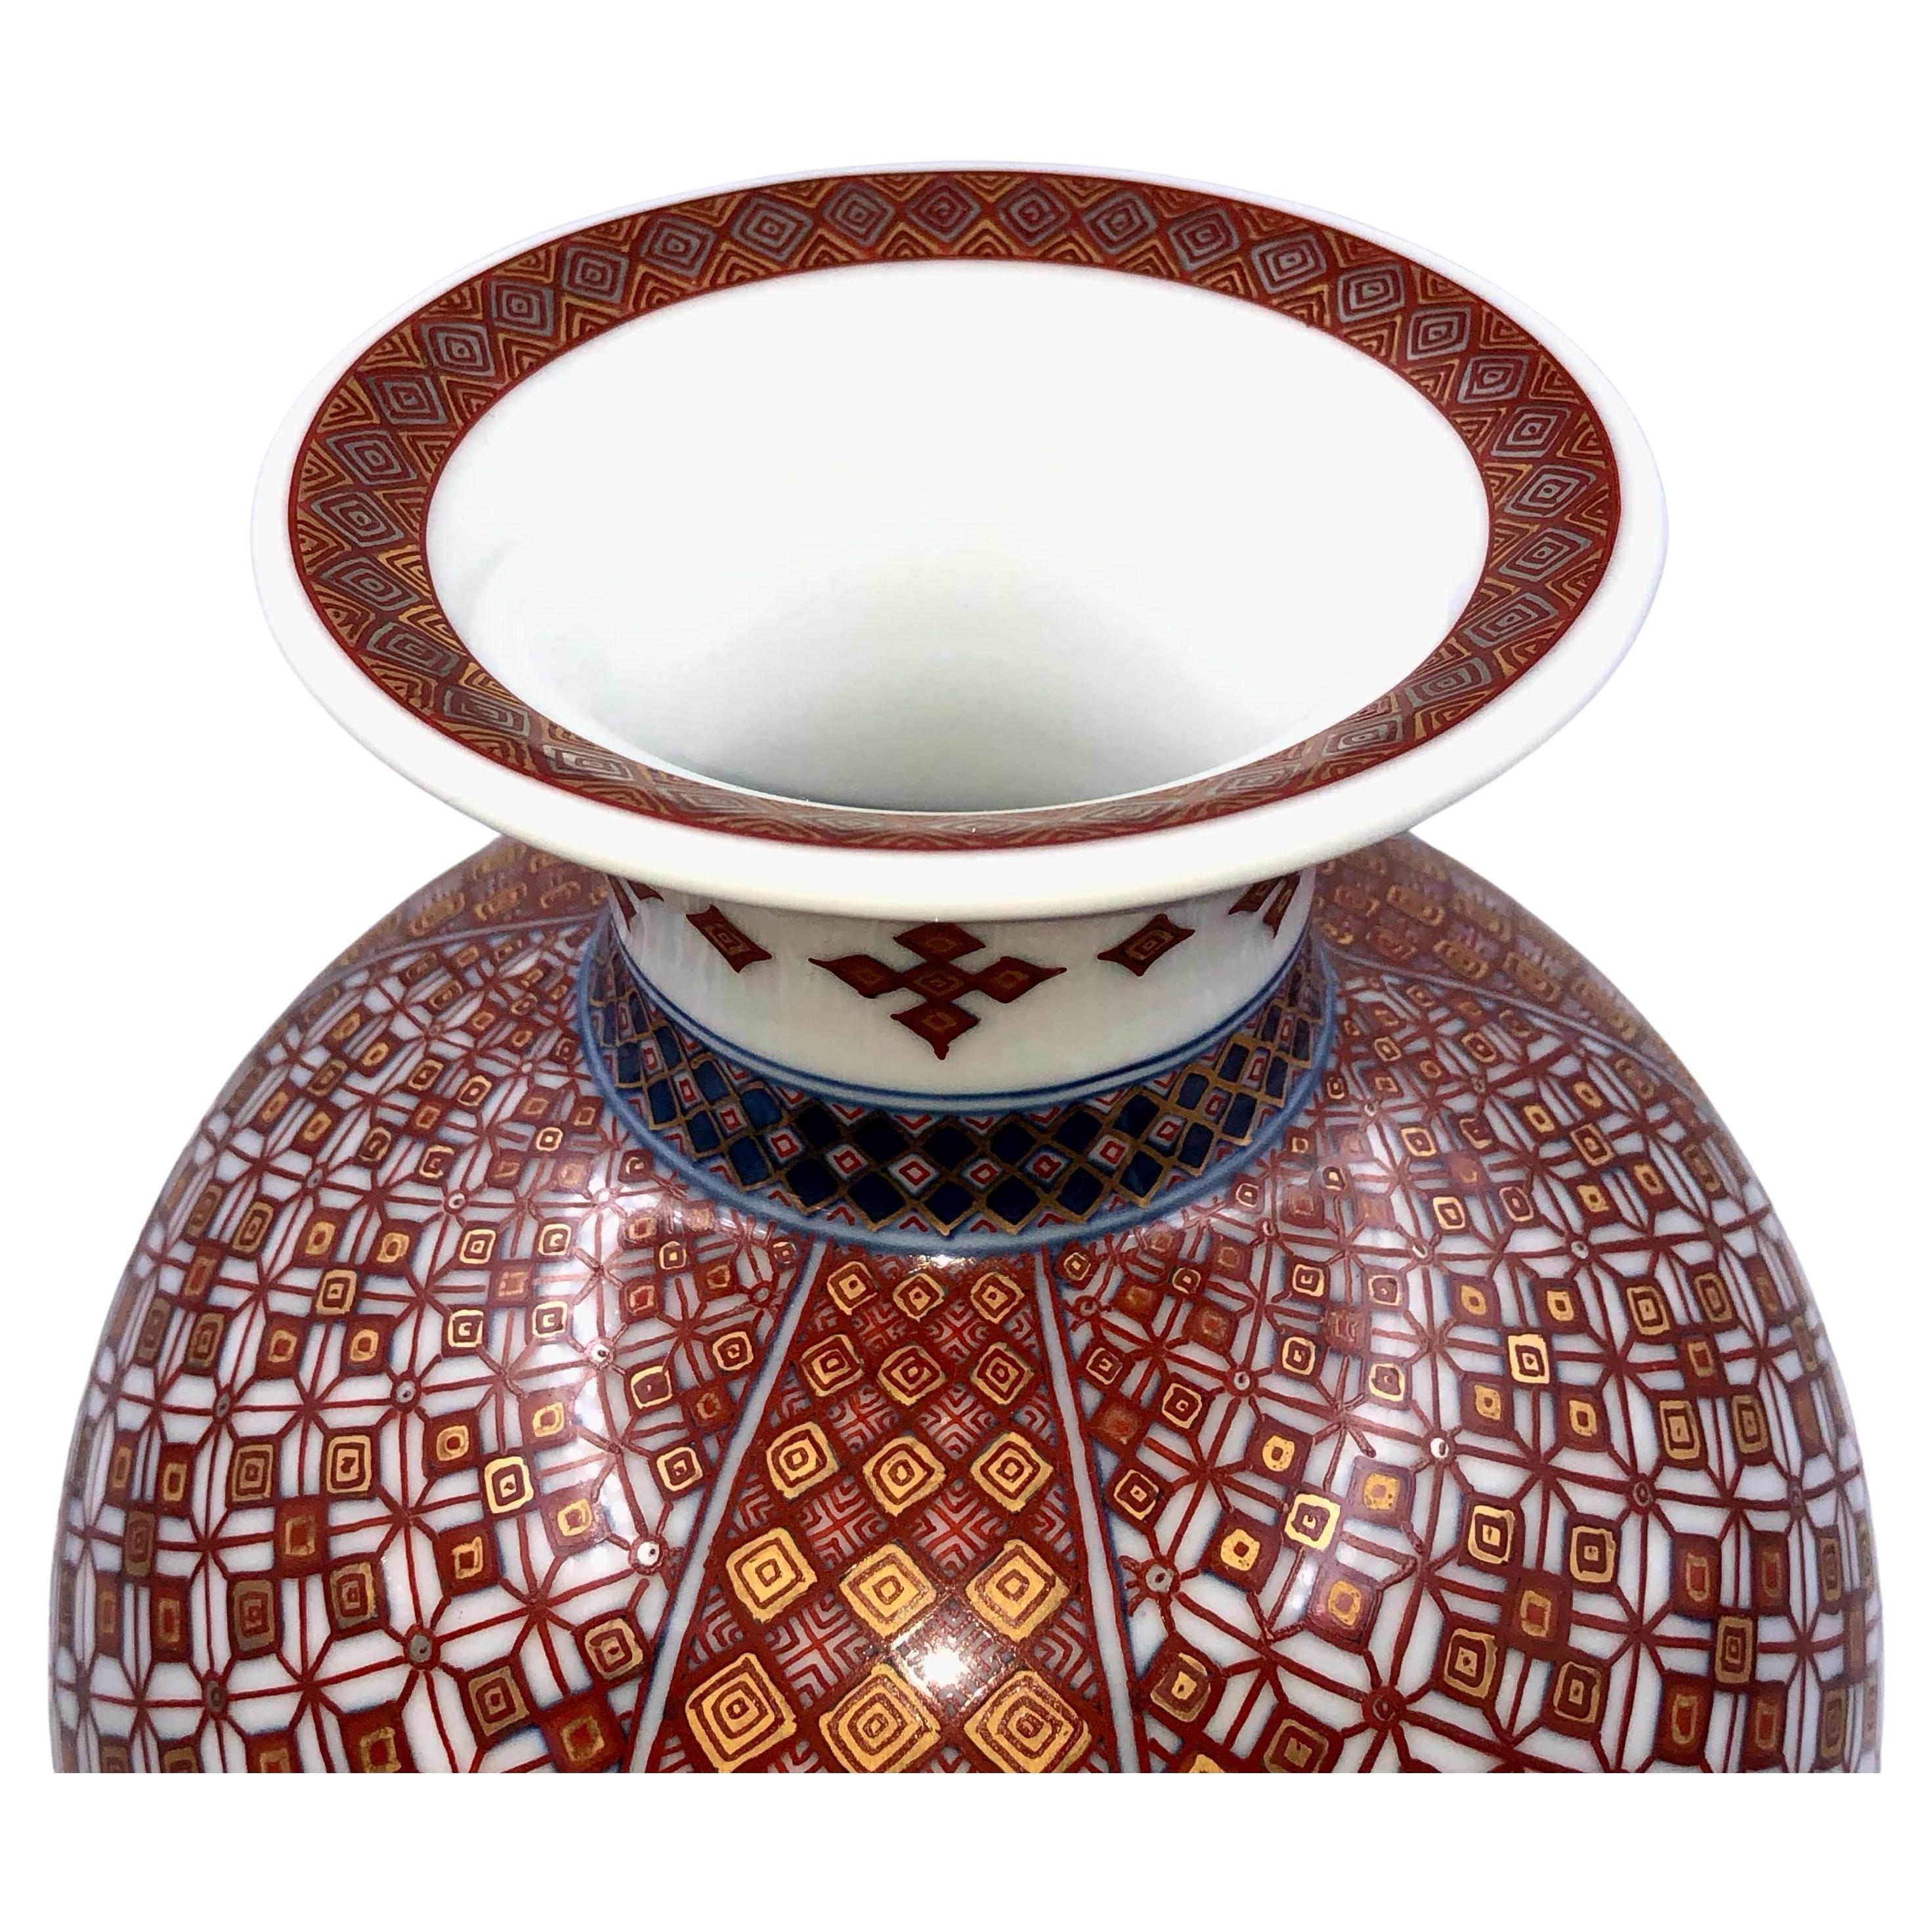 Exquis vase en porcelaine décorative contemporaine de qualité muséale japonaise, de forme extraordinaire, présentant deux fascinants motifs géométriques détaillés en progression, peints à la main de manière extrêmement complexe en rouge et bleu avec